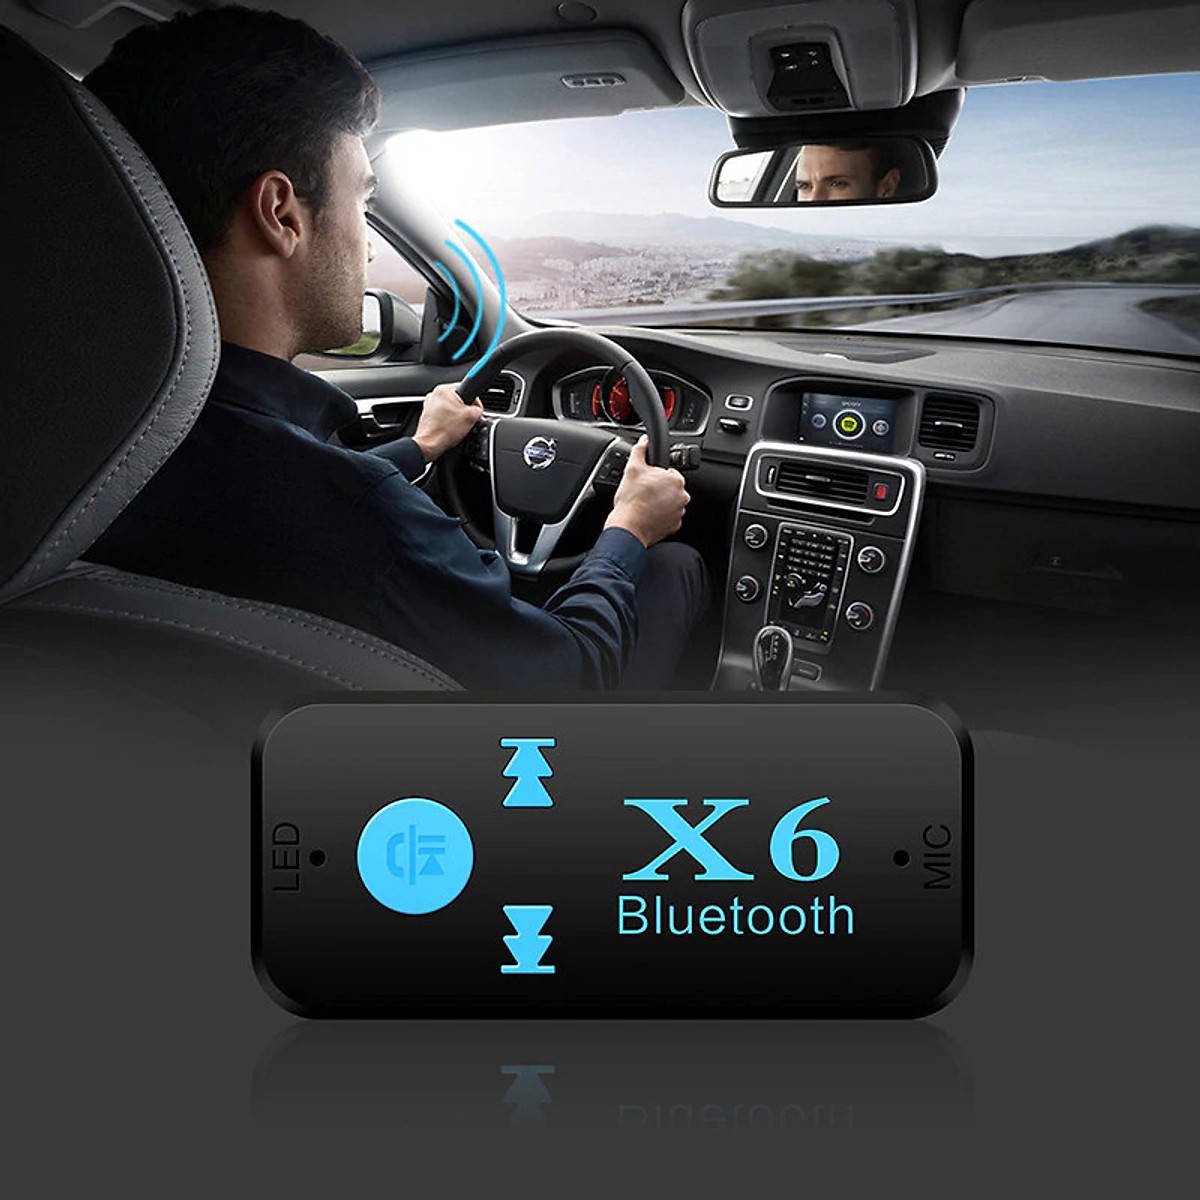 Thiết bị kết nối âm thanh bluetooth trên xe hơi giúp bạn giải trí nghe nhạc ngay trên xe PD